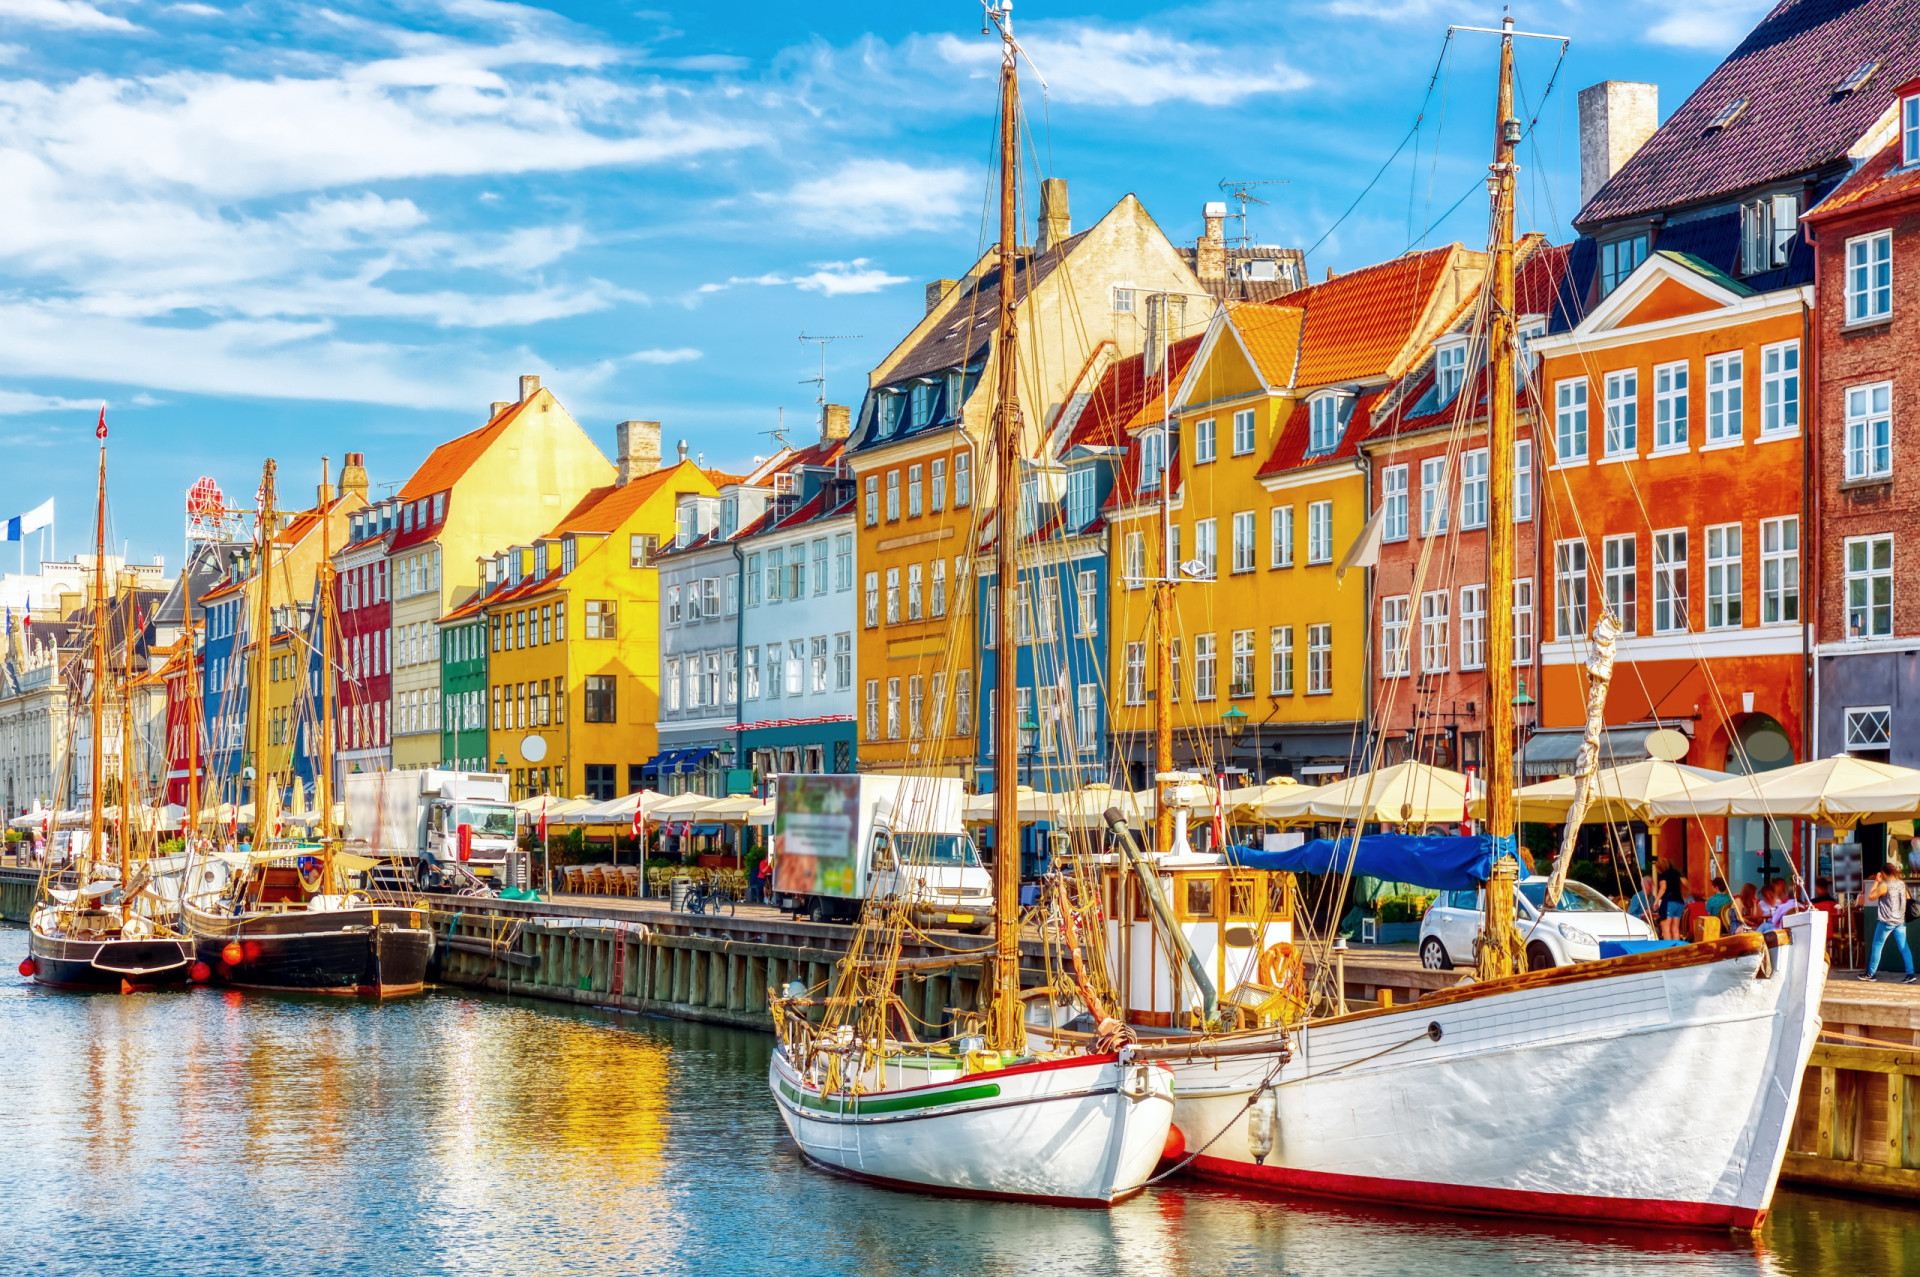 <p>Vous ne pouvez pas louper le canal de Nyhavn du charmant vieux port de la ville. Les maisons colorées du 17e et début du 18e siècle ainsi que les boutiques, bars, cafés et restaurants complètent parfaitement ce paysage typiquement danois.</p><p><a href="https://www.msn.com/fr-fr/community/channel/vid-7xx8mnucu55yw63we9va2gwr7uihbxwc68fxqp25x6tg4ftibpra?cvid=94631541bc0f4f89bfd59158d696ad7e">Suivez-nous et accédez tous les jours à du contenu exclusif</a></p>